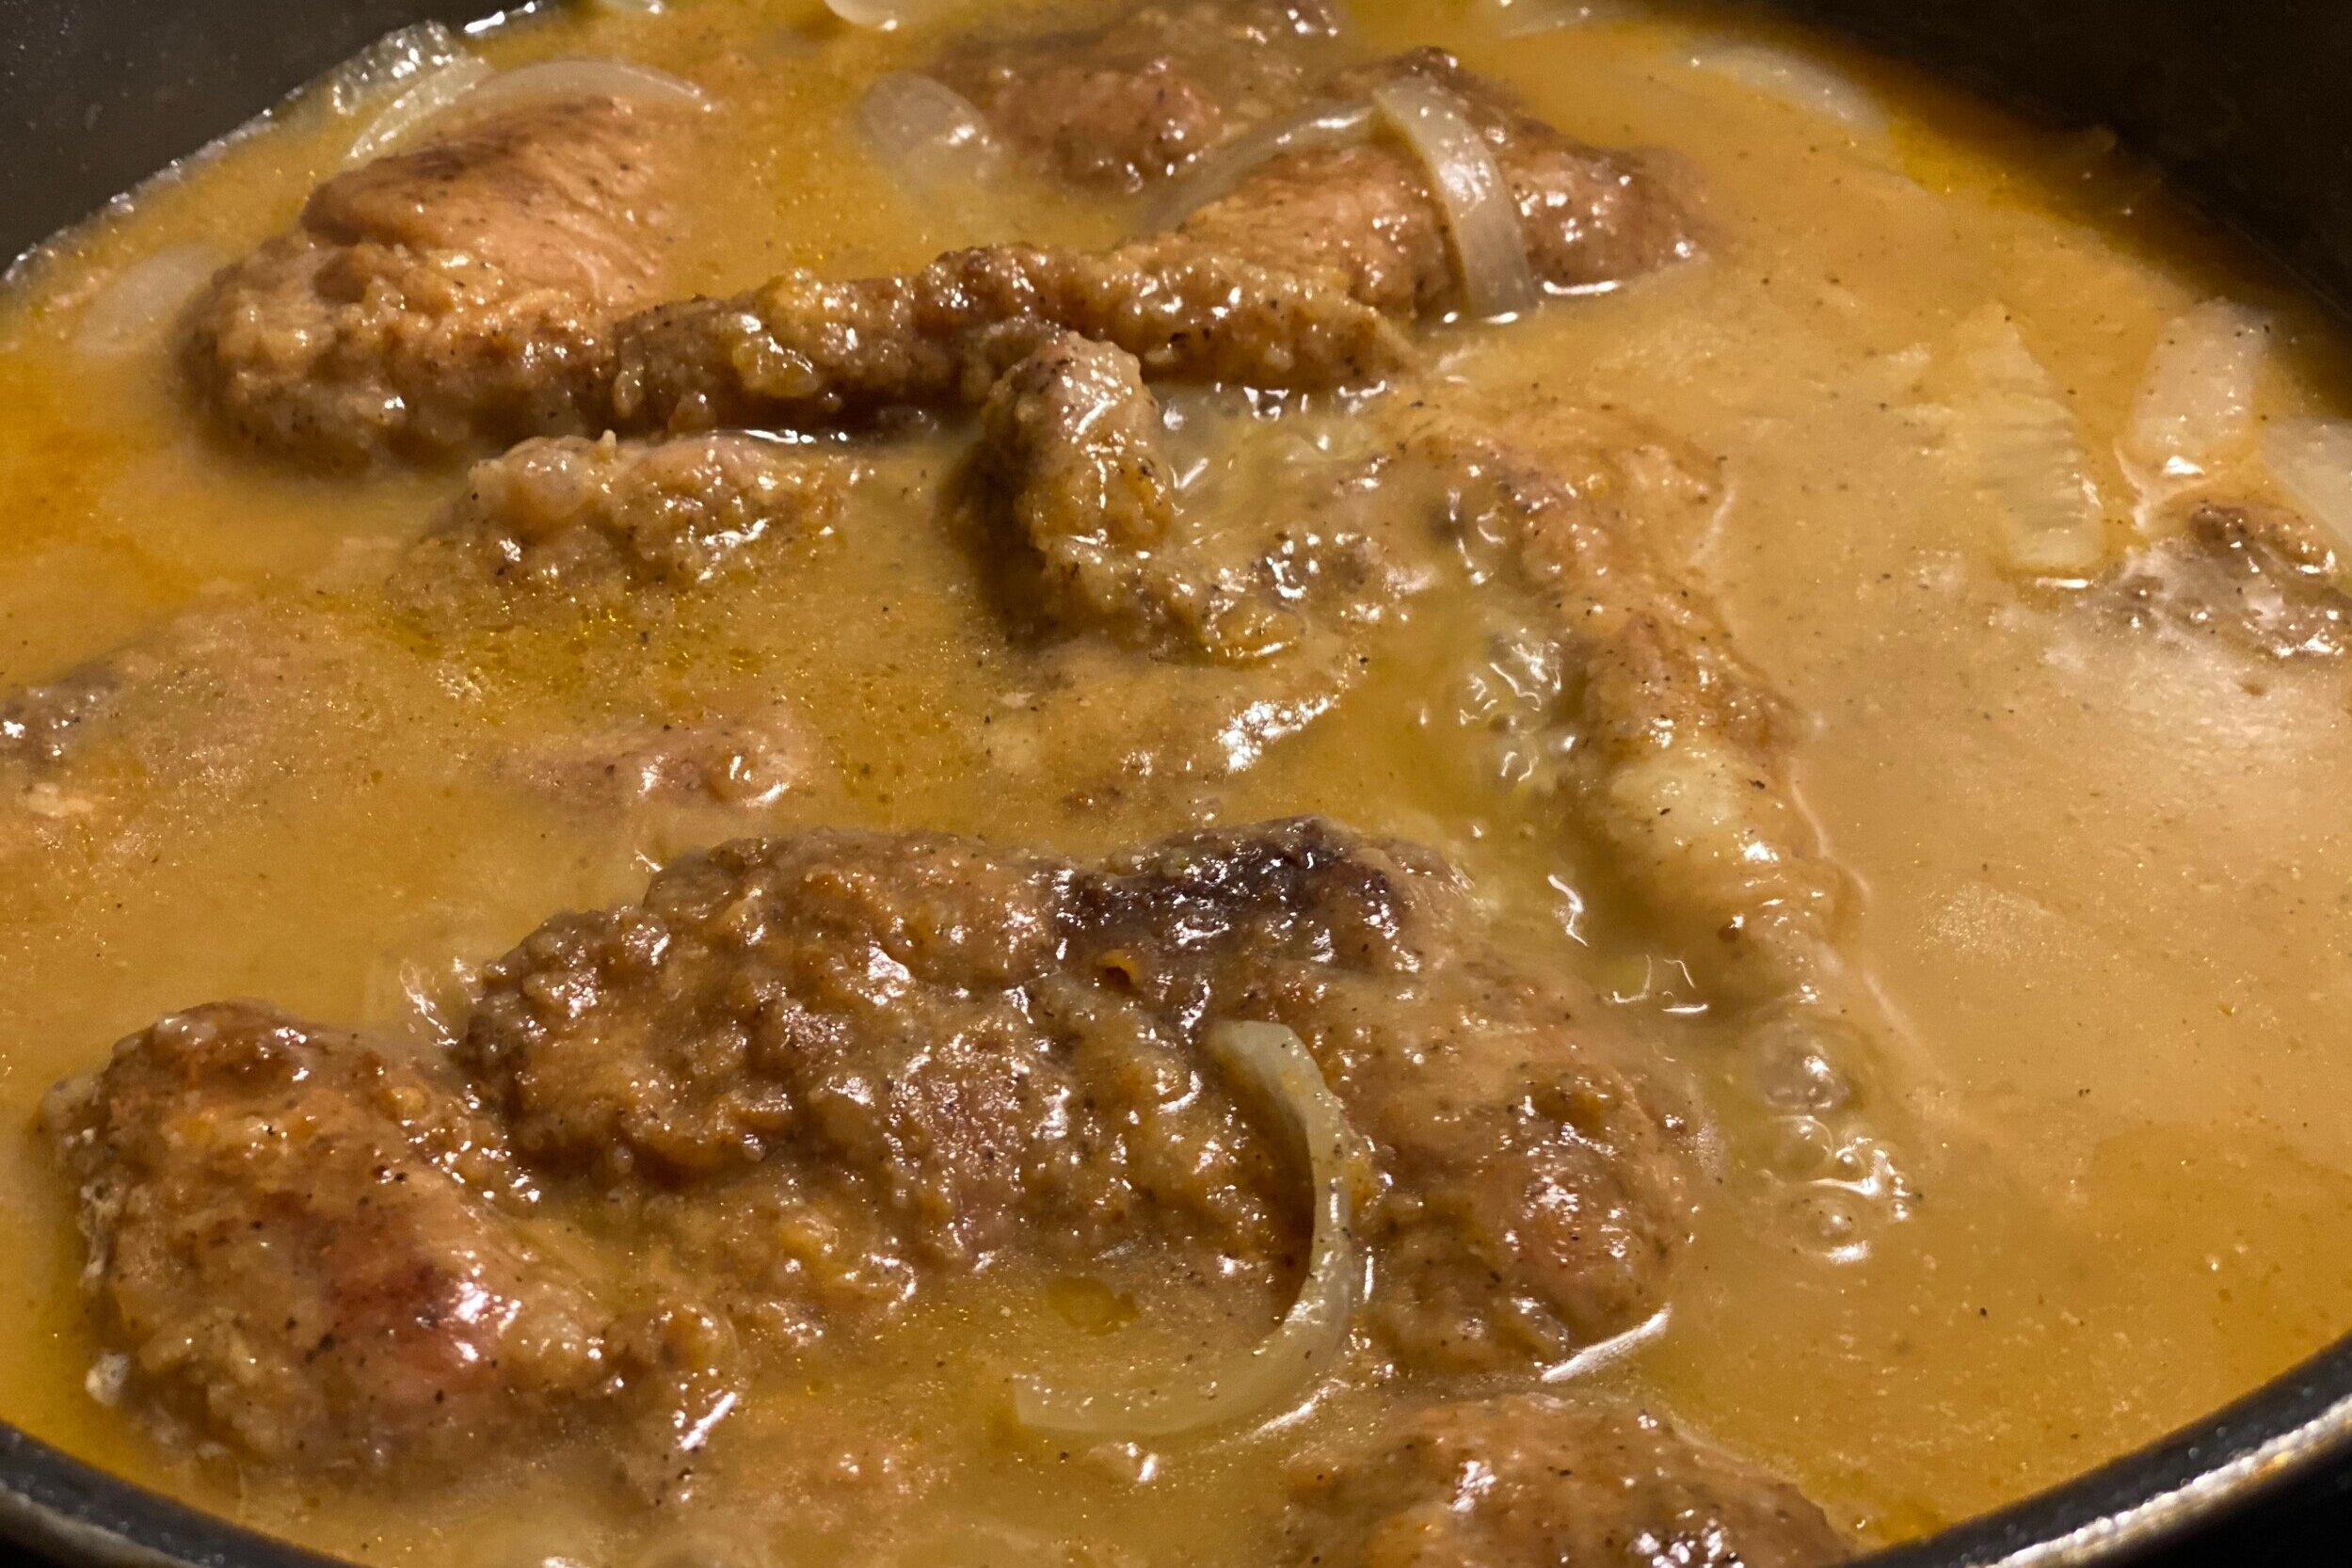  Smothered pork shoulder steaks in gravy 